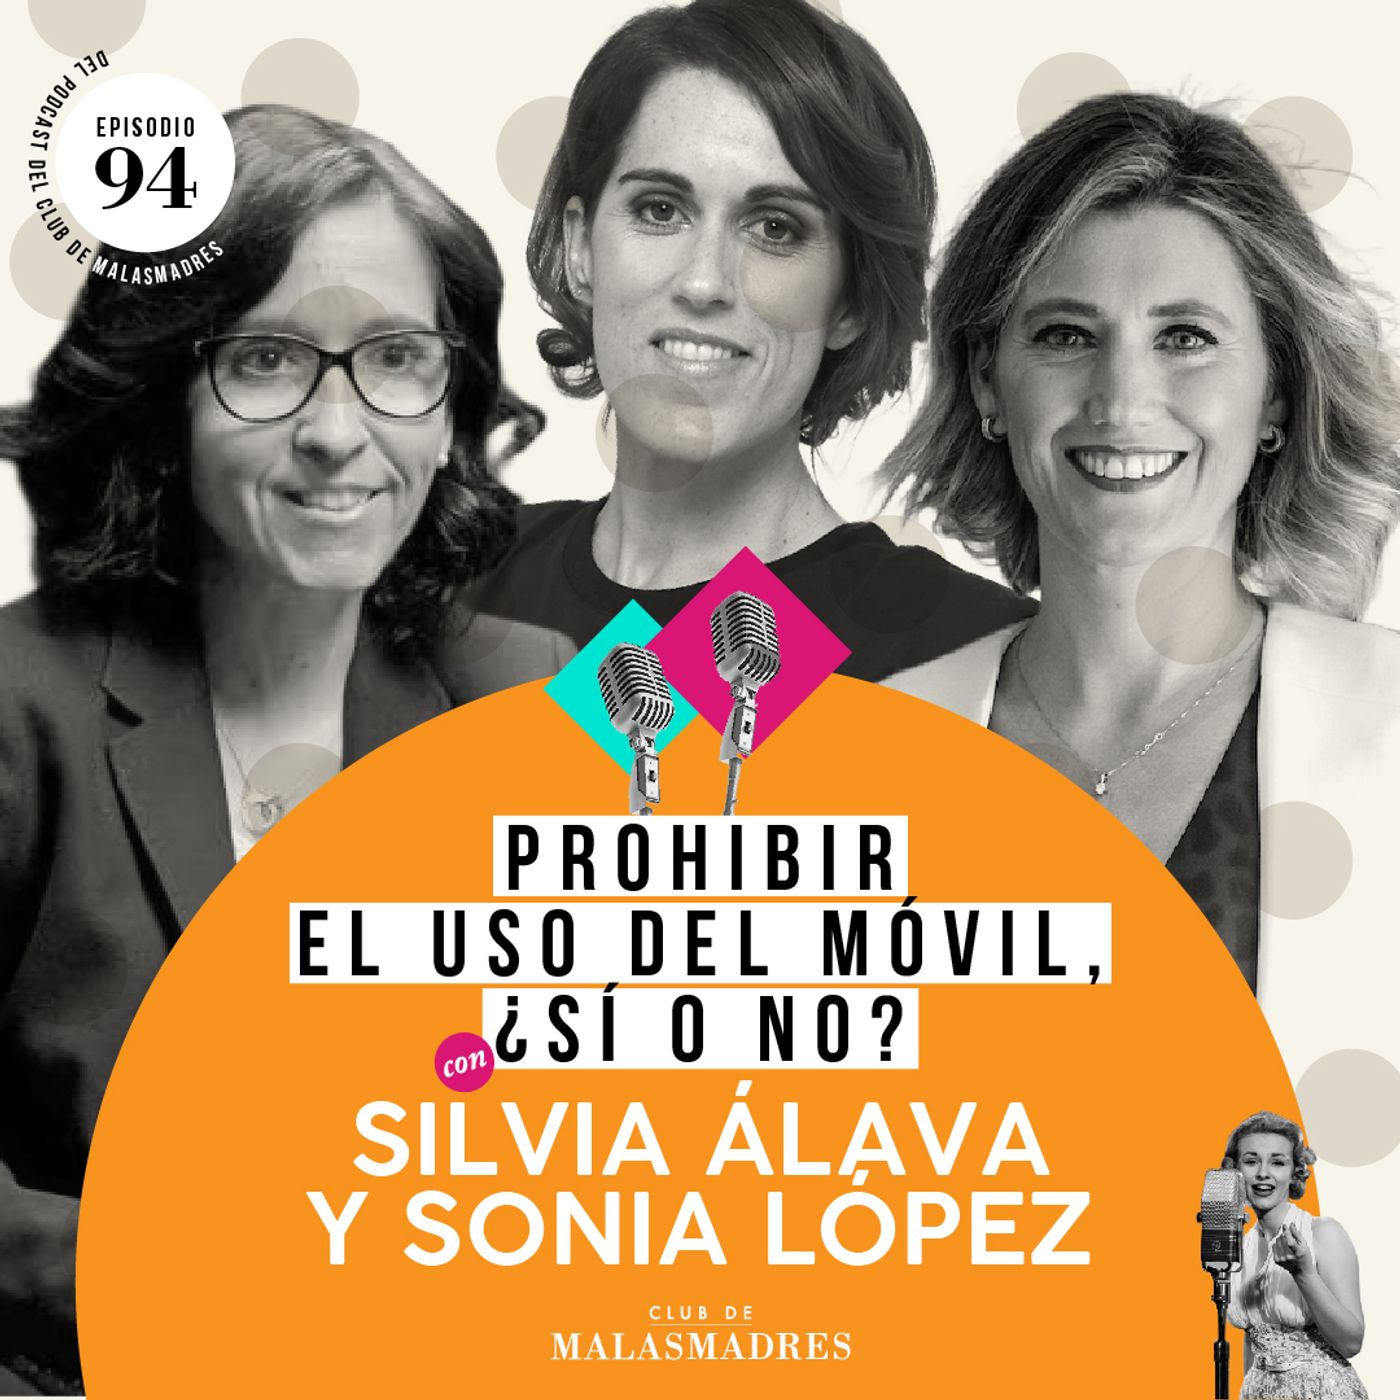 El Dilema del teléfono móvil: ¿Prohibir o Educar? con Silvia Álava y Sonia López